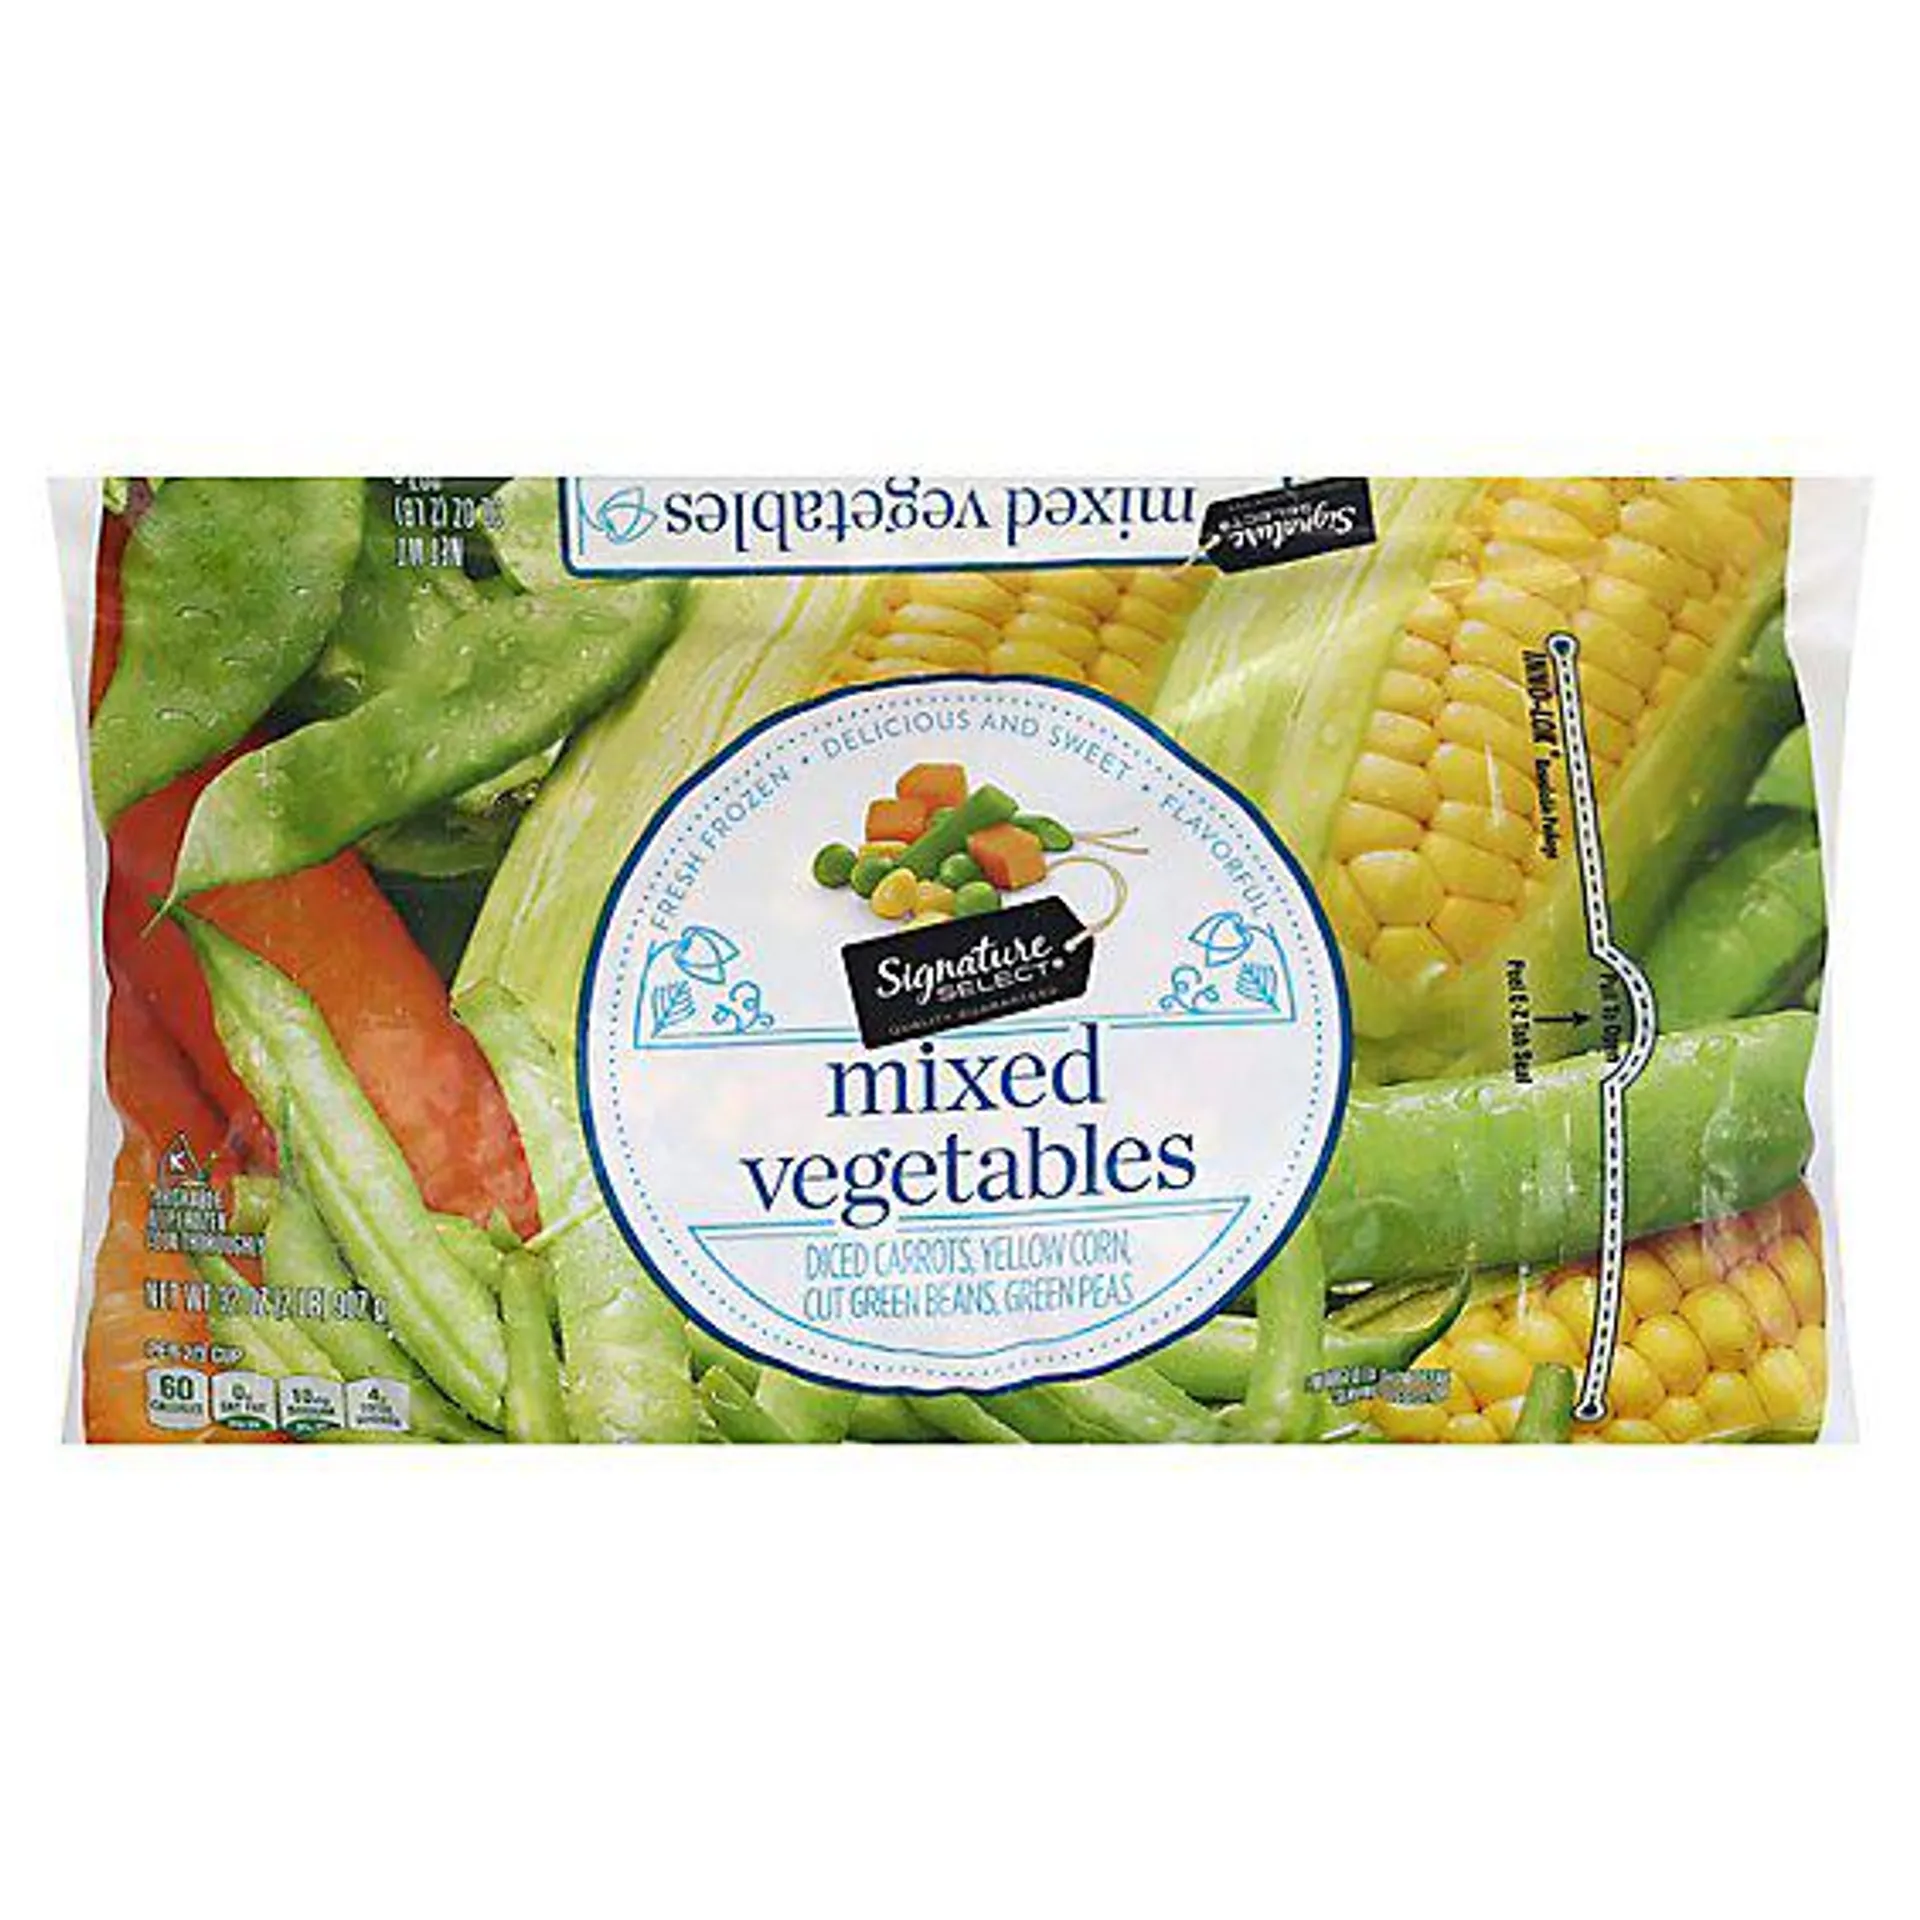 Signature SELECT Mixed Vegetables - 32 Oz